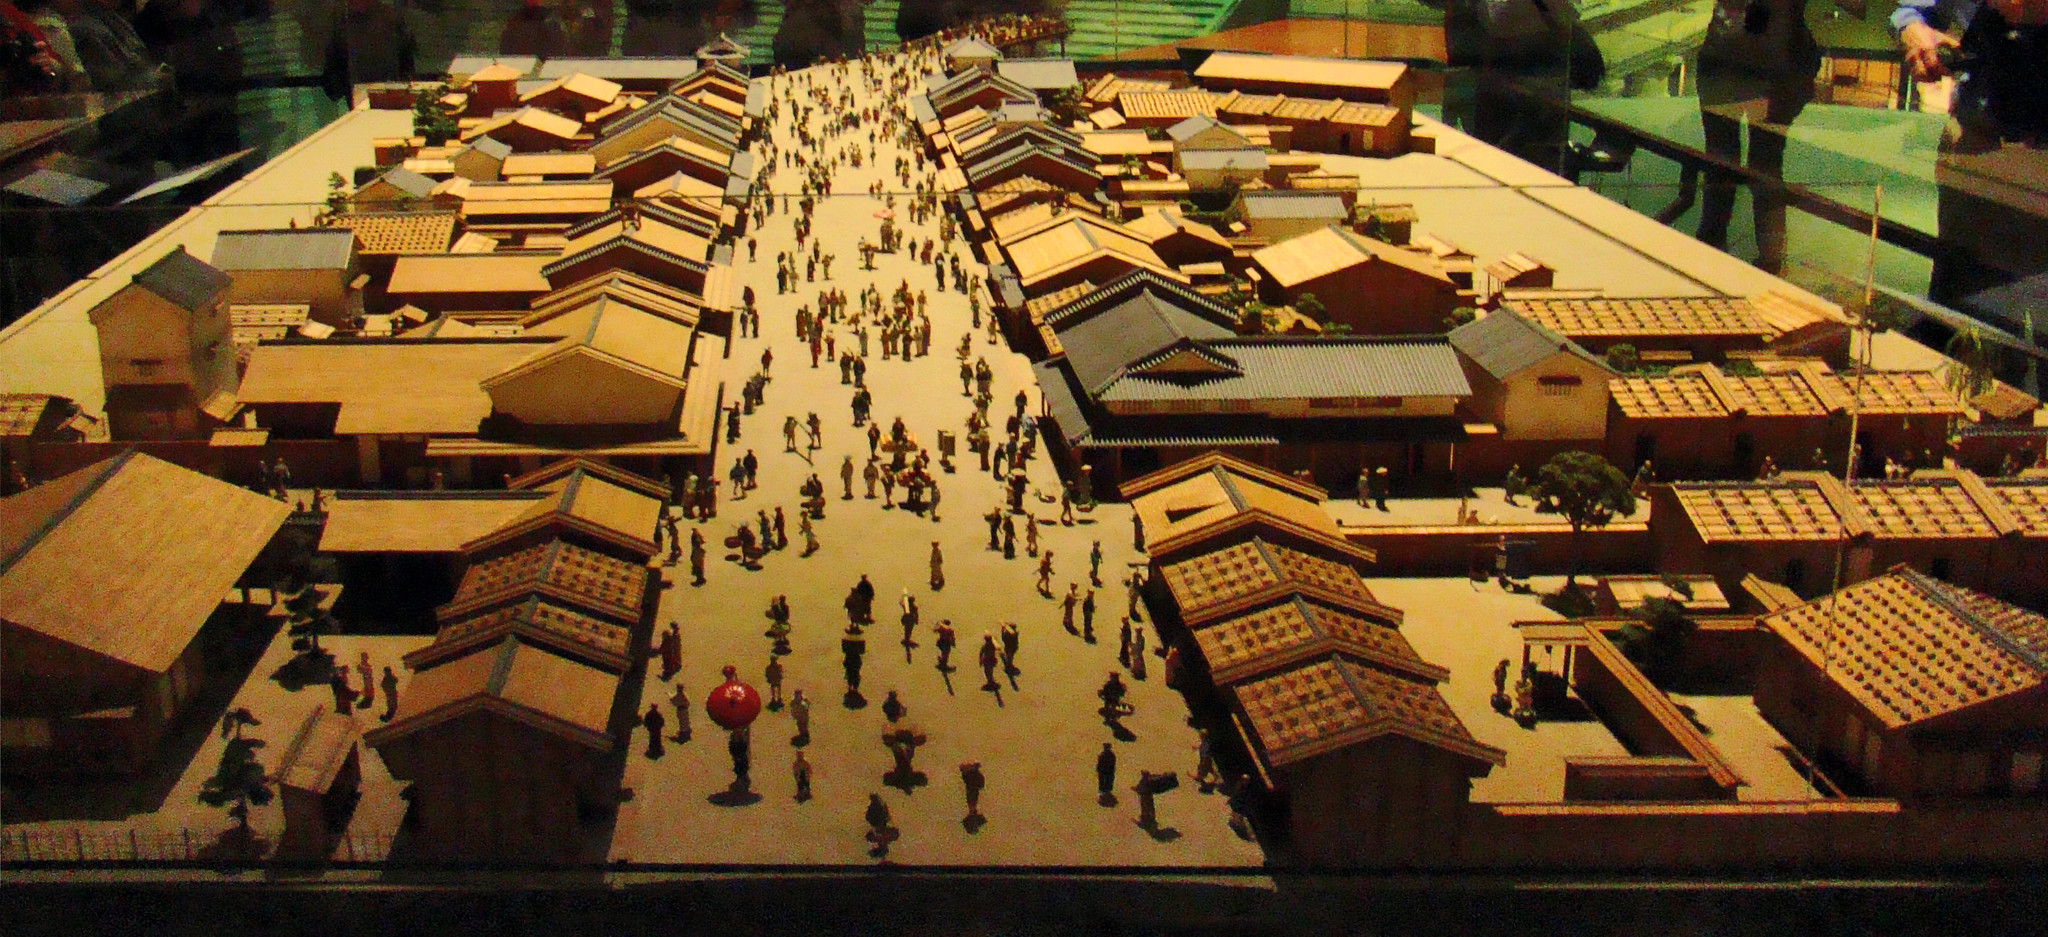 Maqueta casas de los chonin del barrio de Nihonbashi Museo Edo Tokio Japón 05